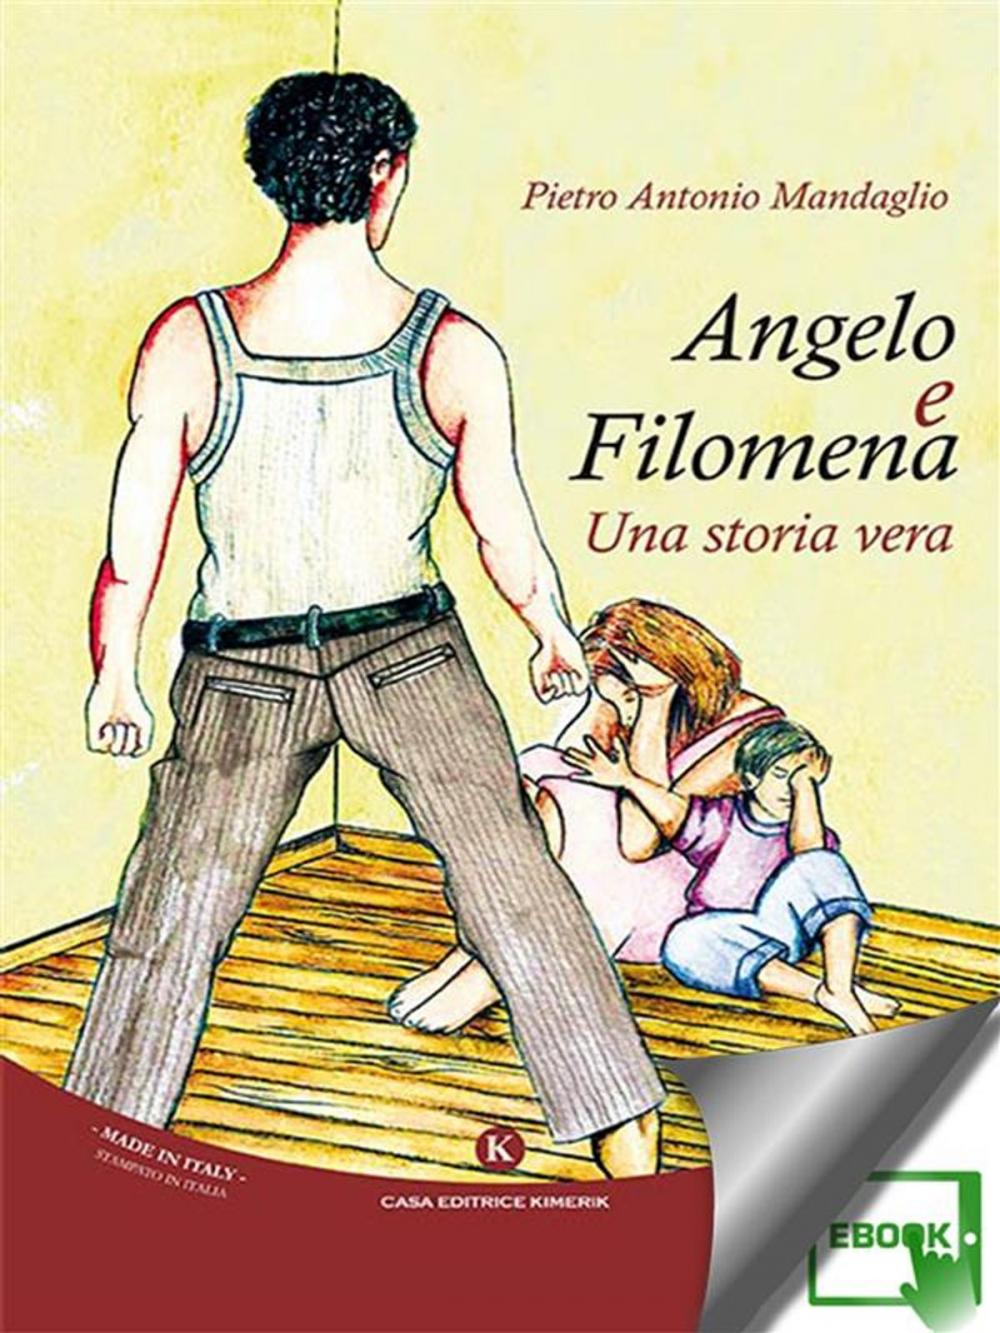 Big bigCover of Angelo e Filomena